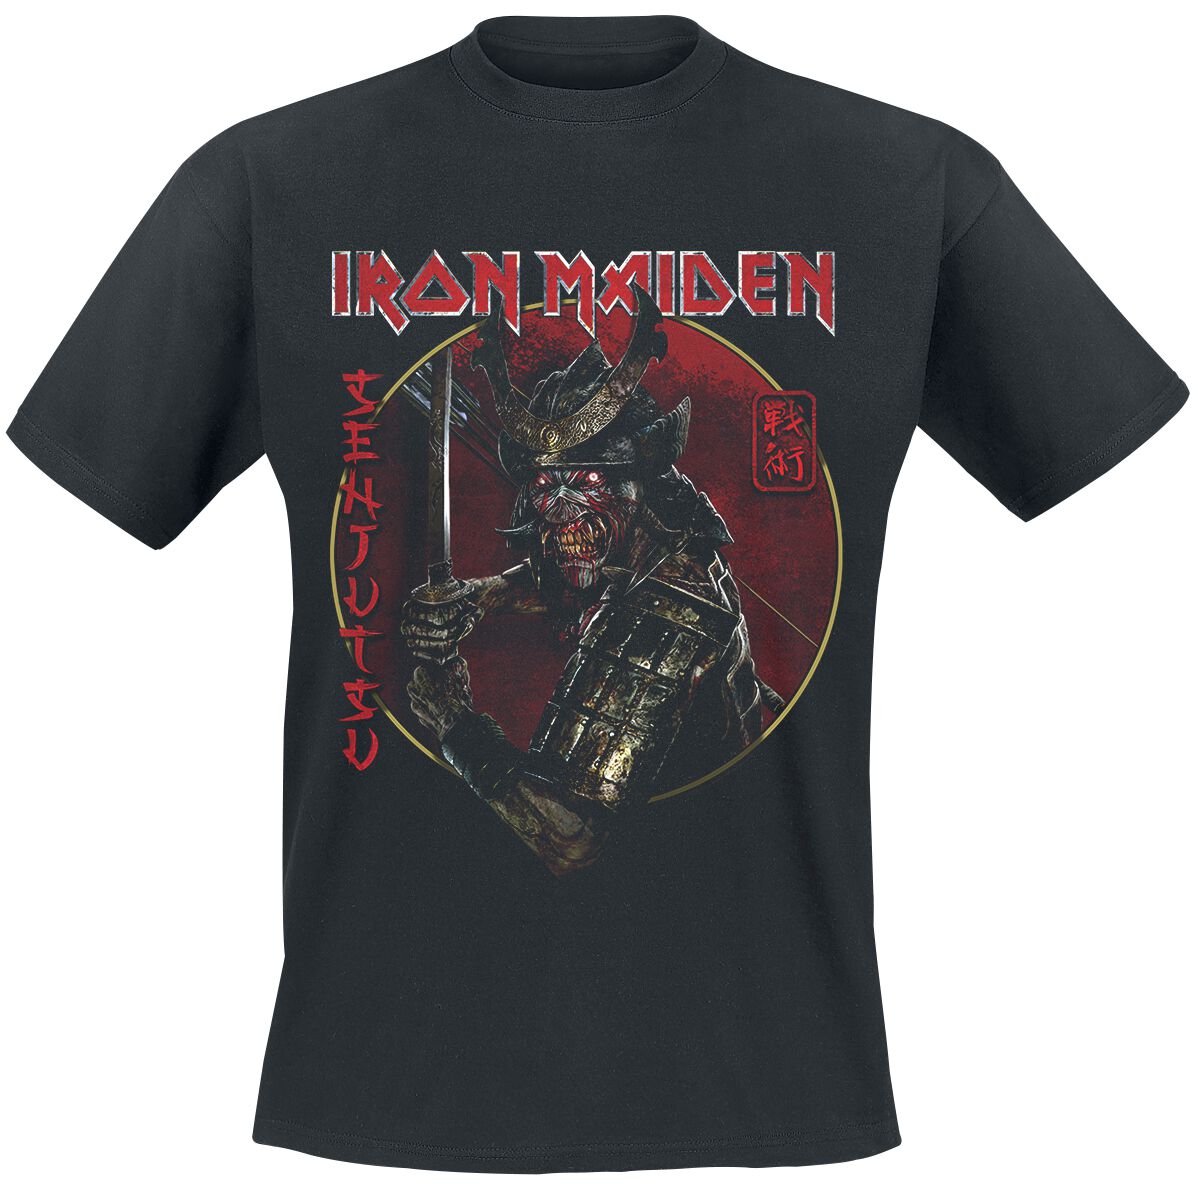 Iron Maiden T-Shirt - Senjutsu Eddie Gold Circle - S bis 4XL - für Männer - Größe L - schwarz  - EMP exklusives Merchandise!